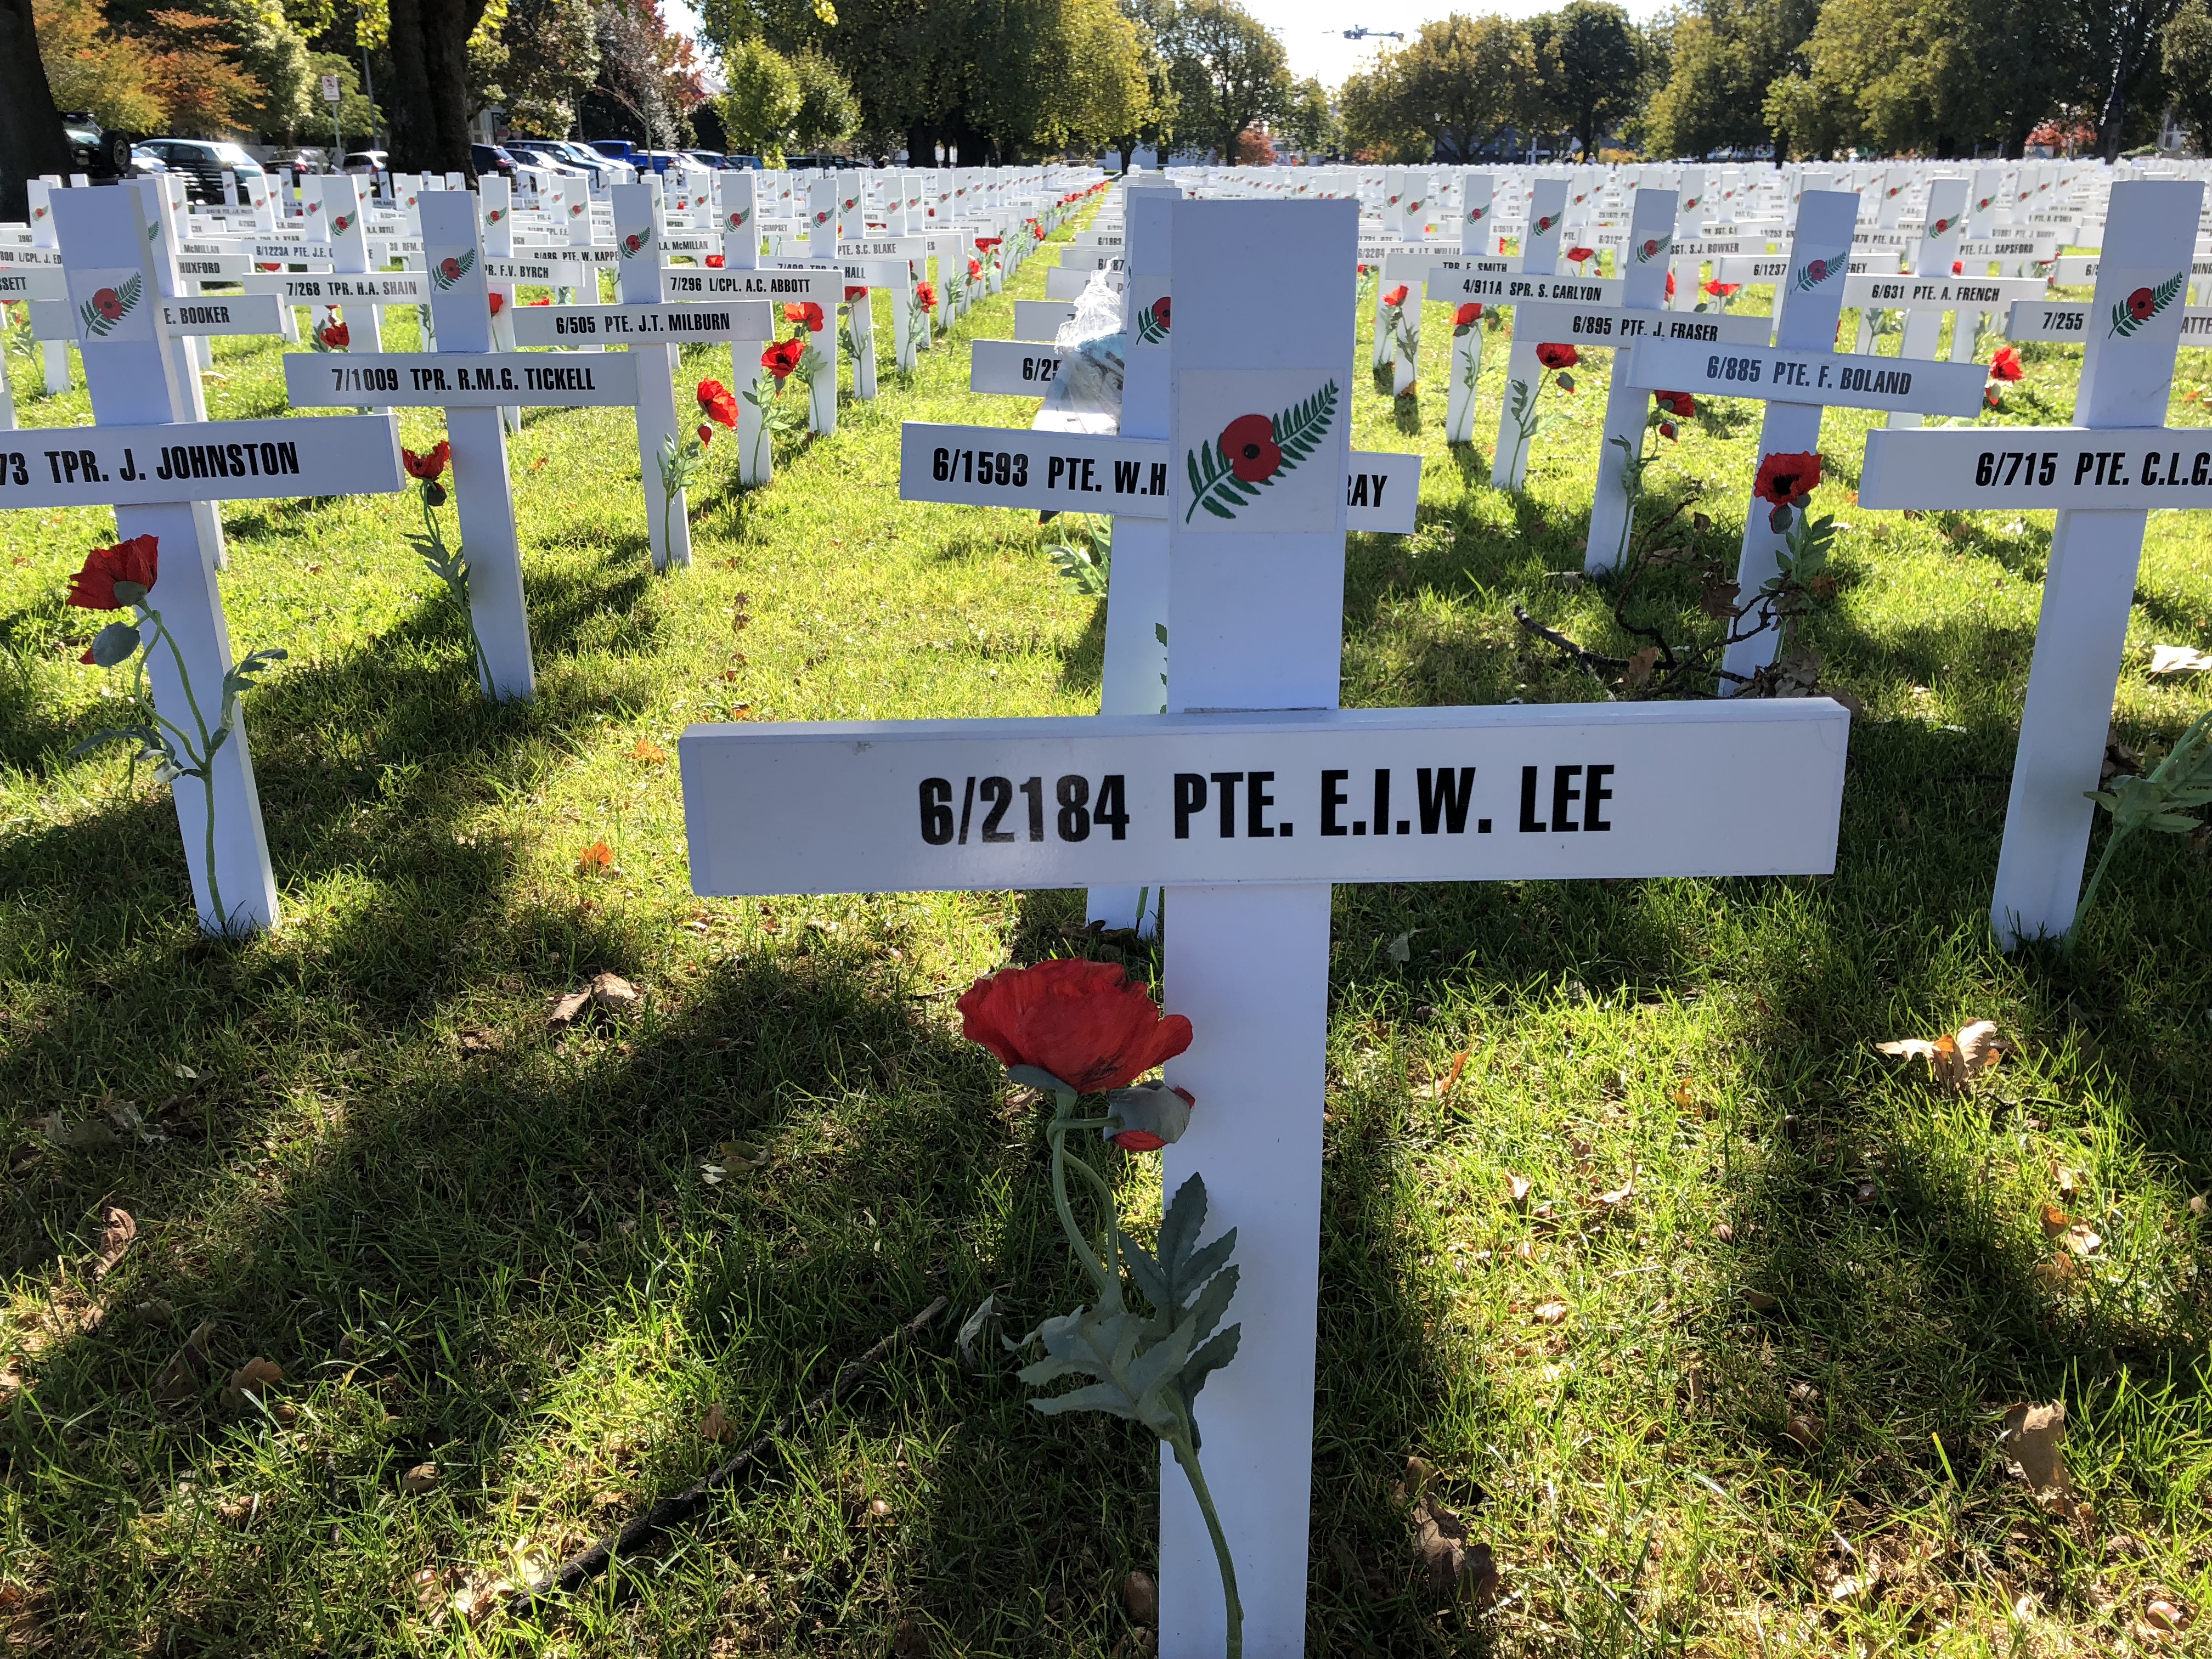 Private Lee's commemorative White Cross in 2018